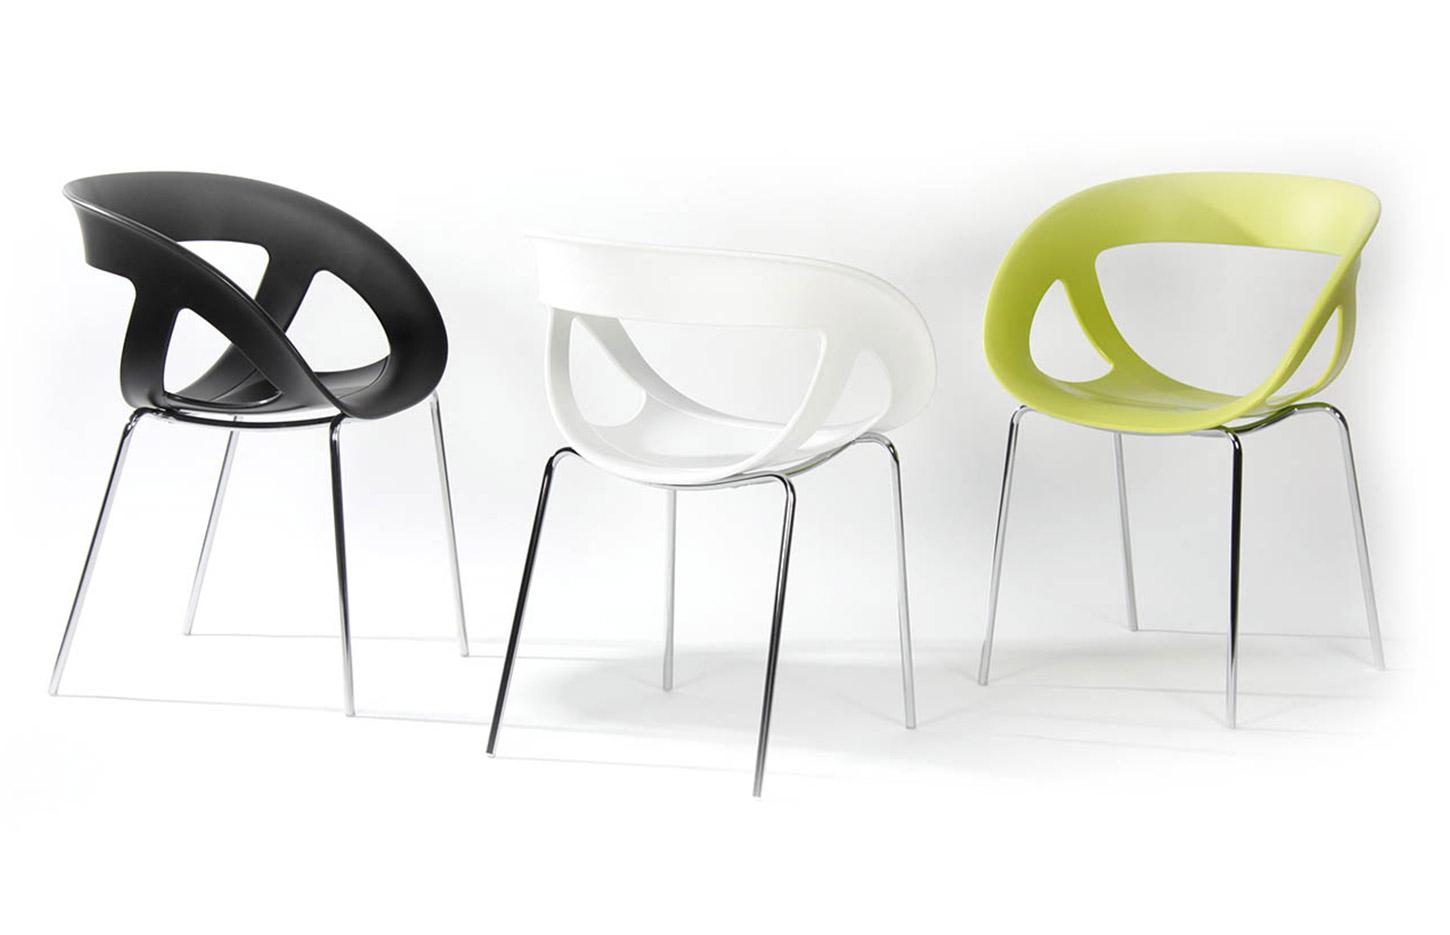 Chaise coque design ajourée polypropylène et structure chromé, Made in France, gamme Helena, France Bureau